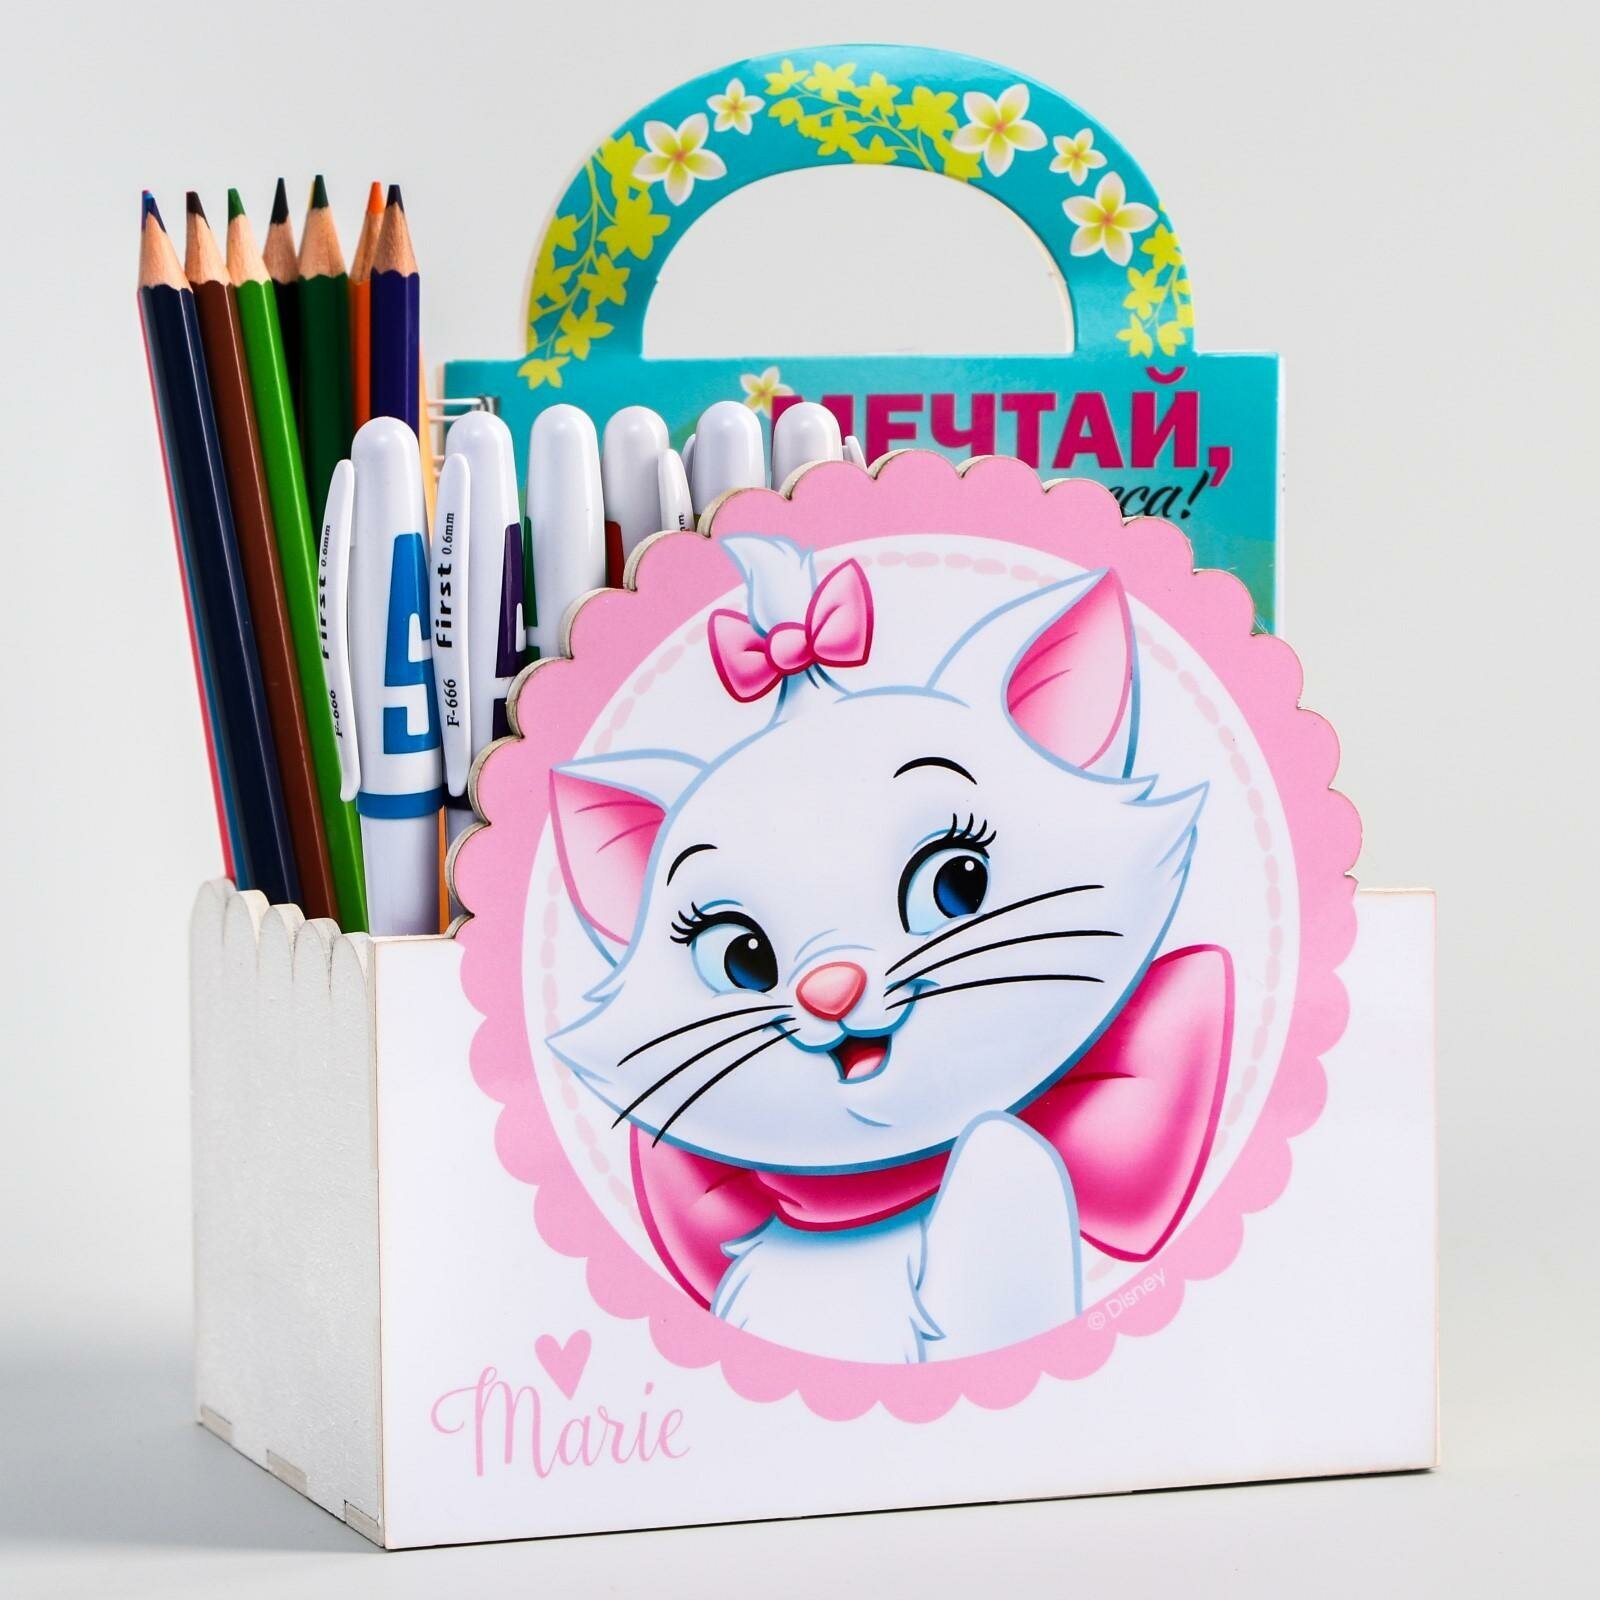 Органайзер настольный для канцелярии Disney "Мари", подставка для карандашей, ручек, фломастеров, для девочек